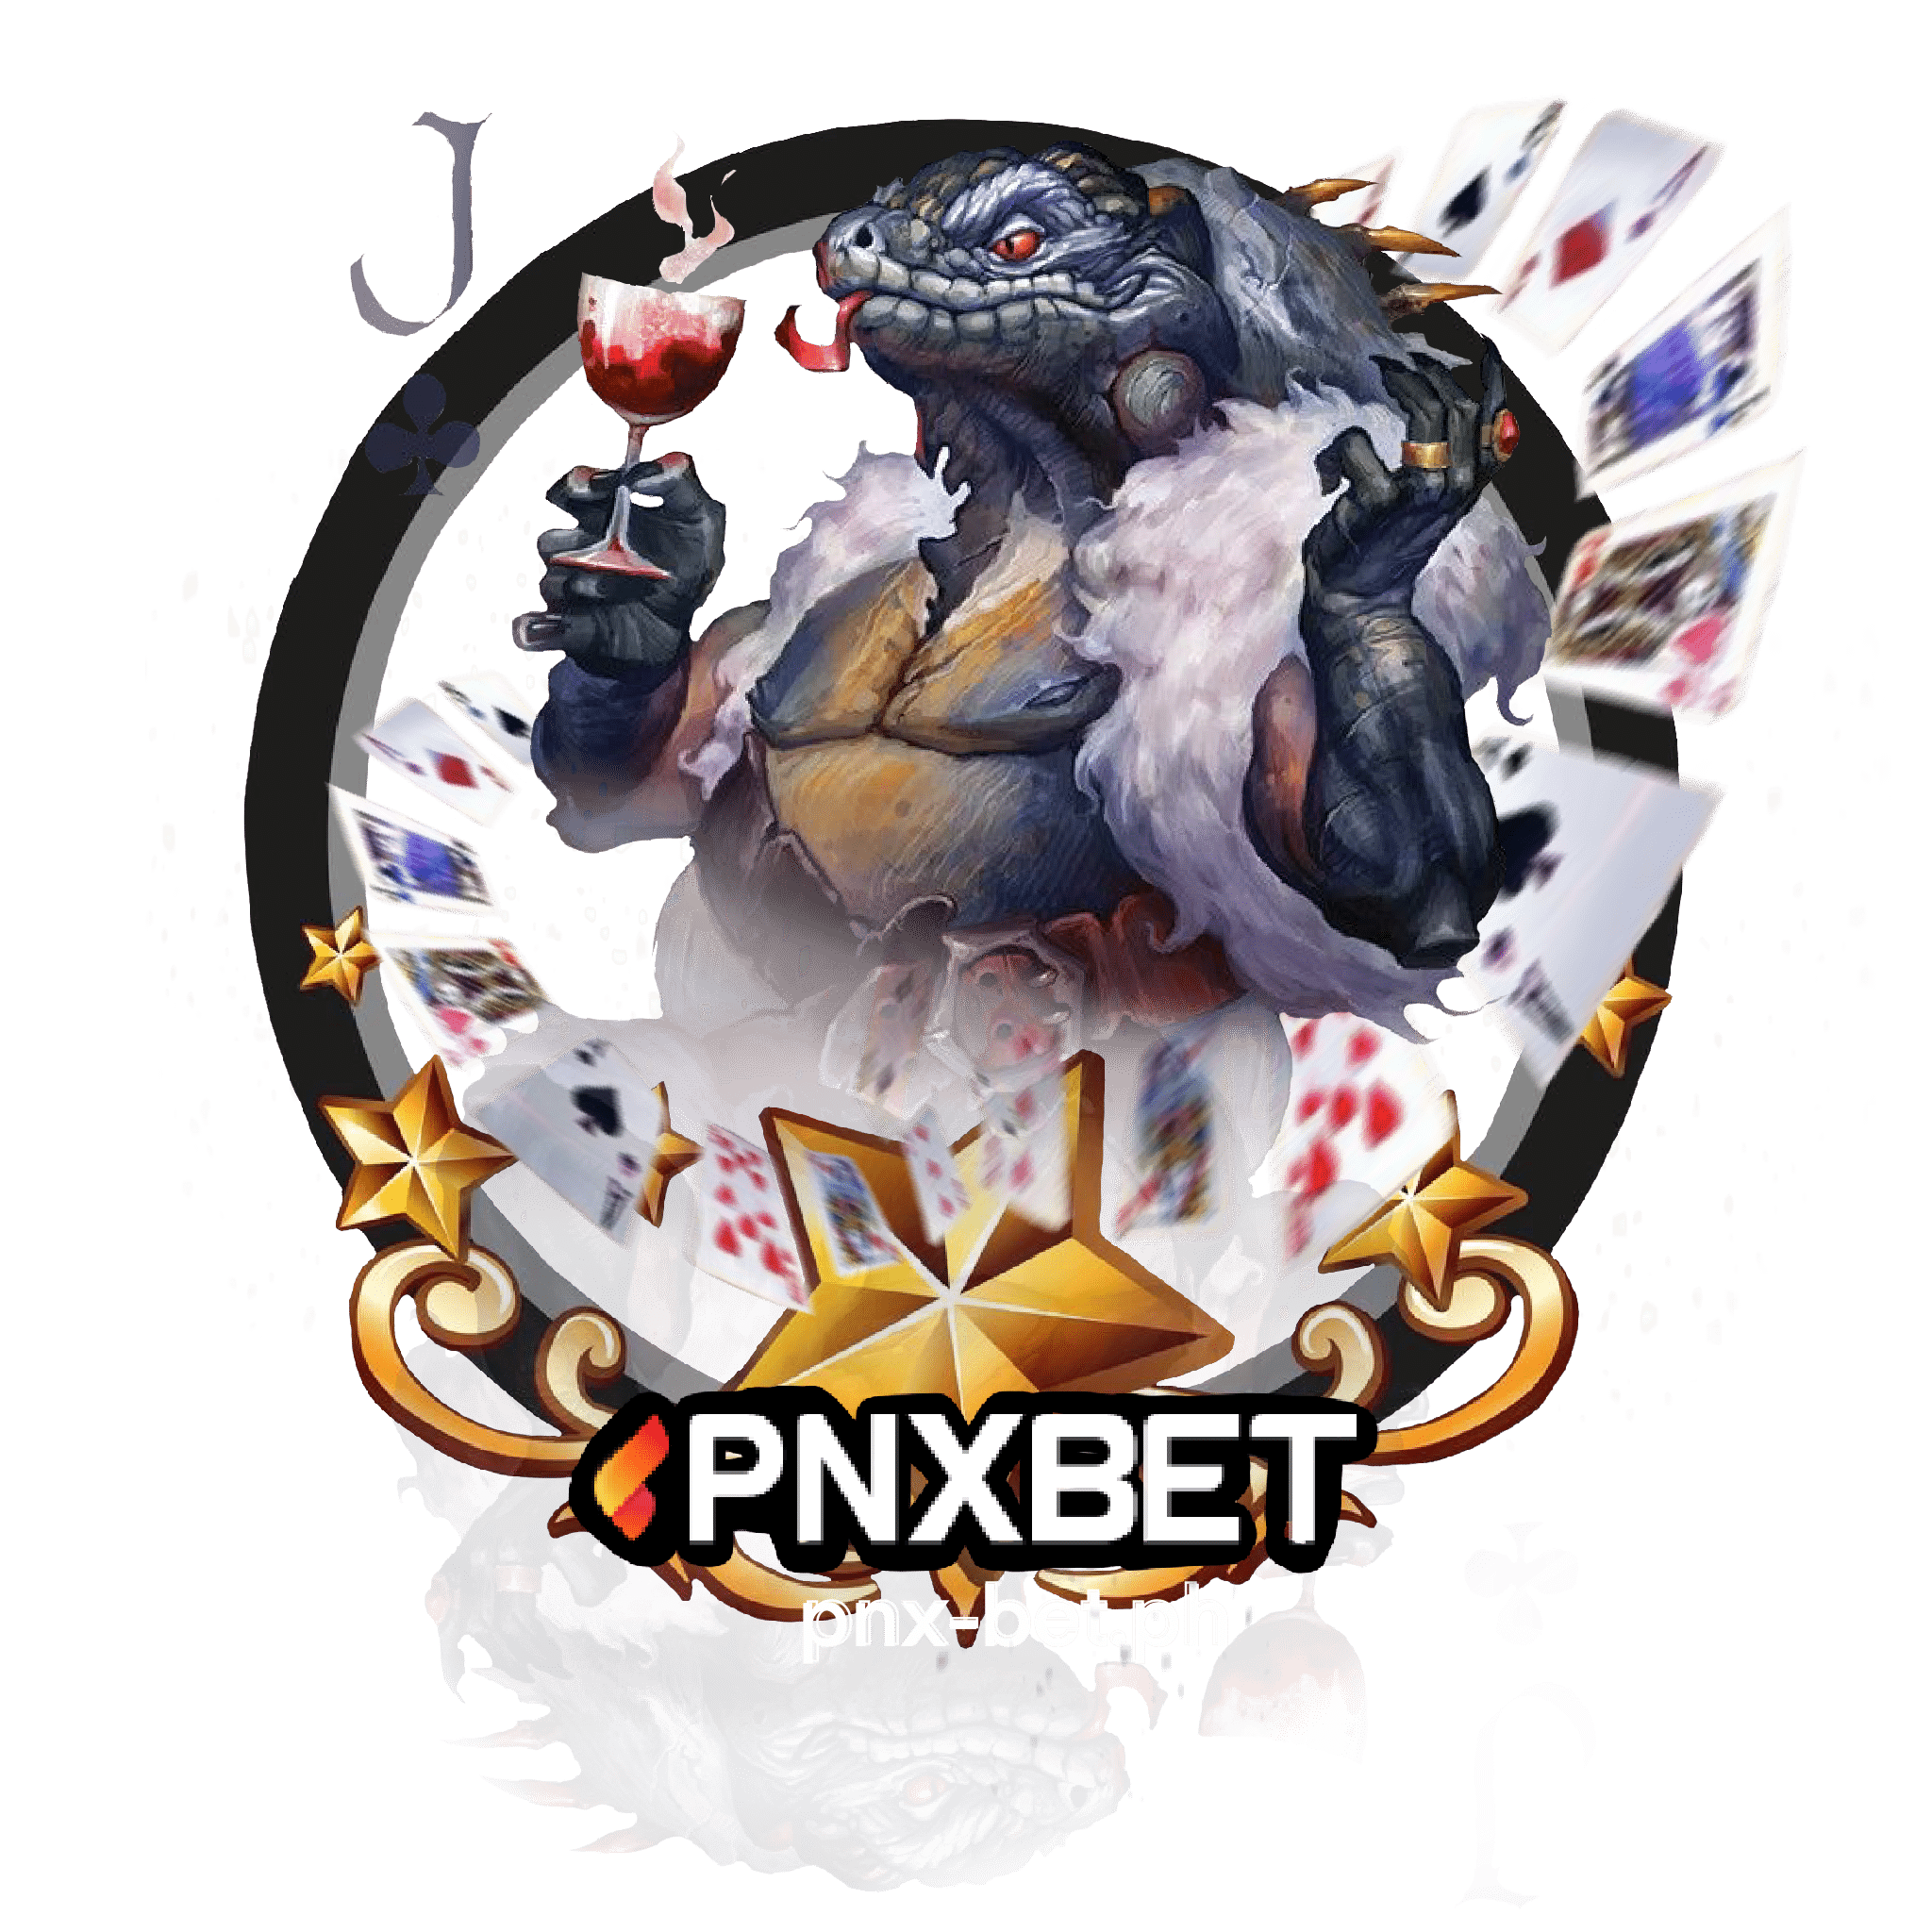 PNXBET poker